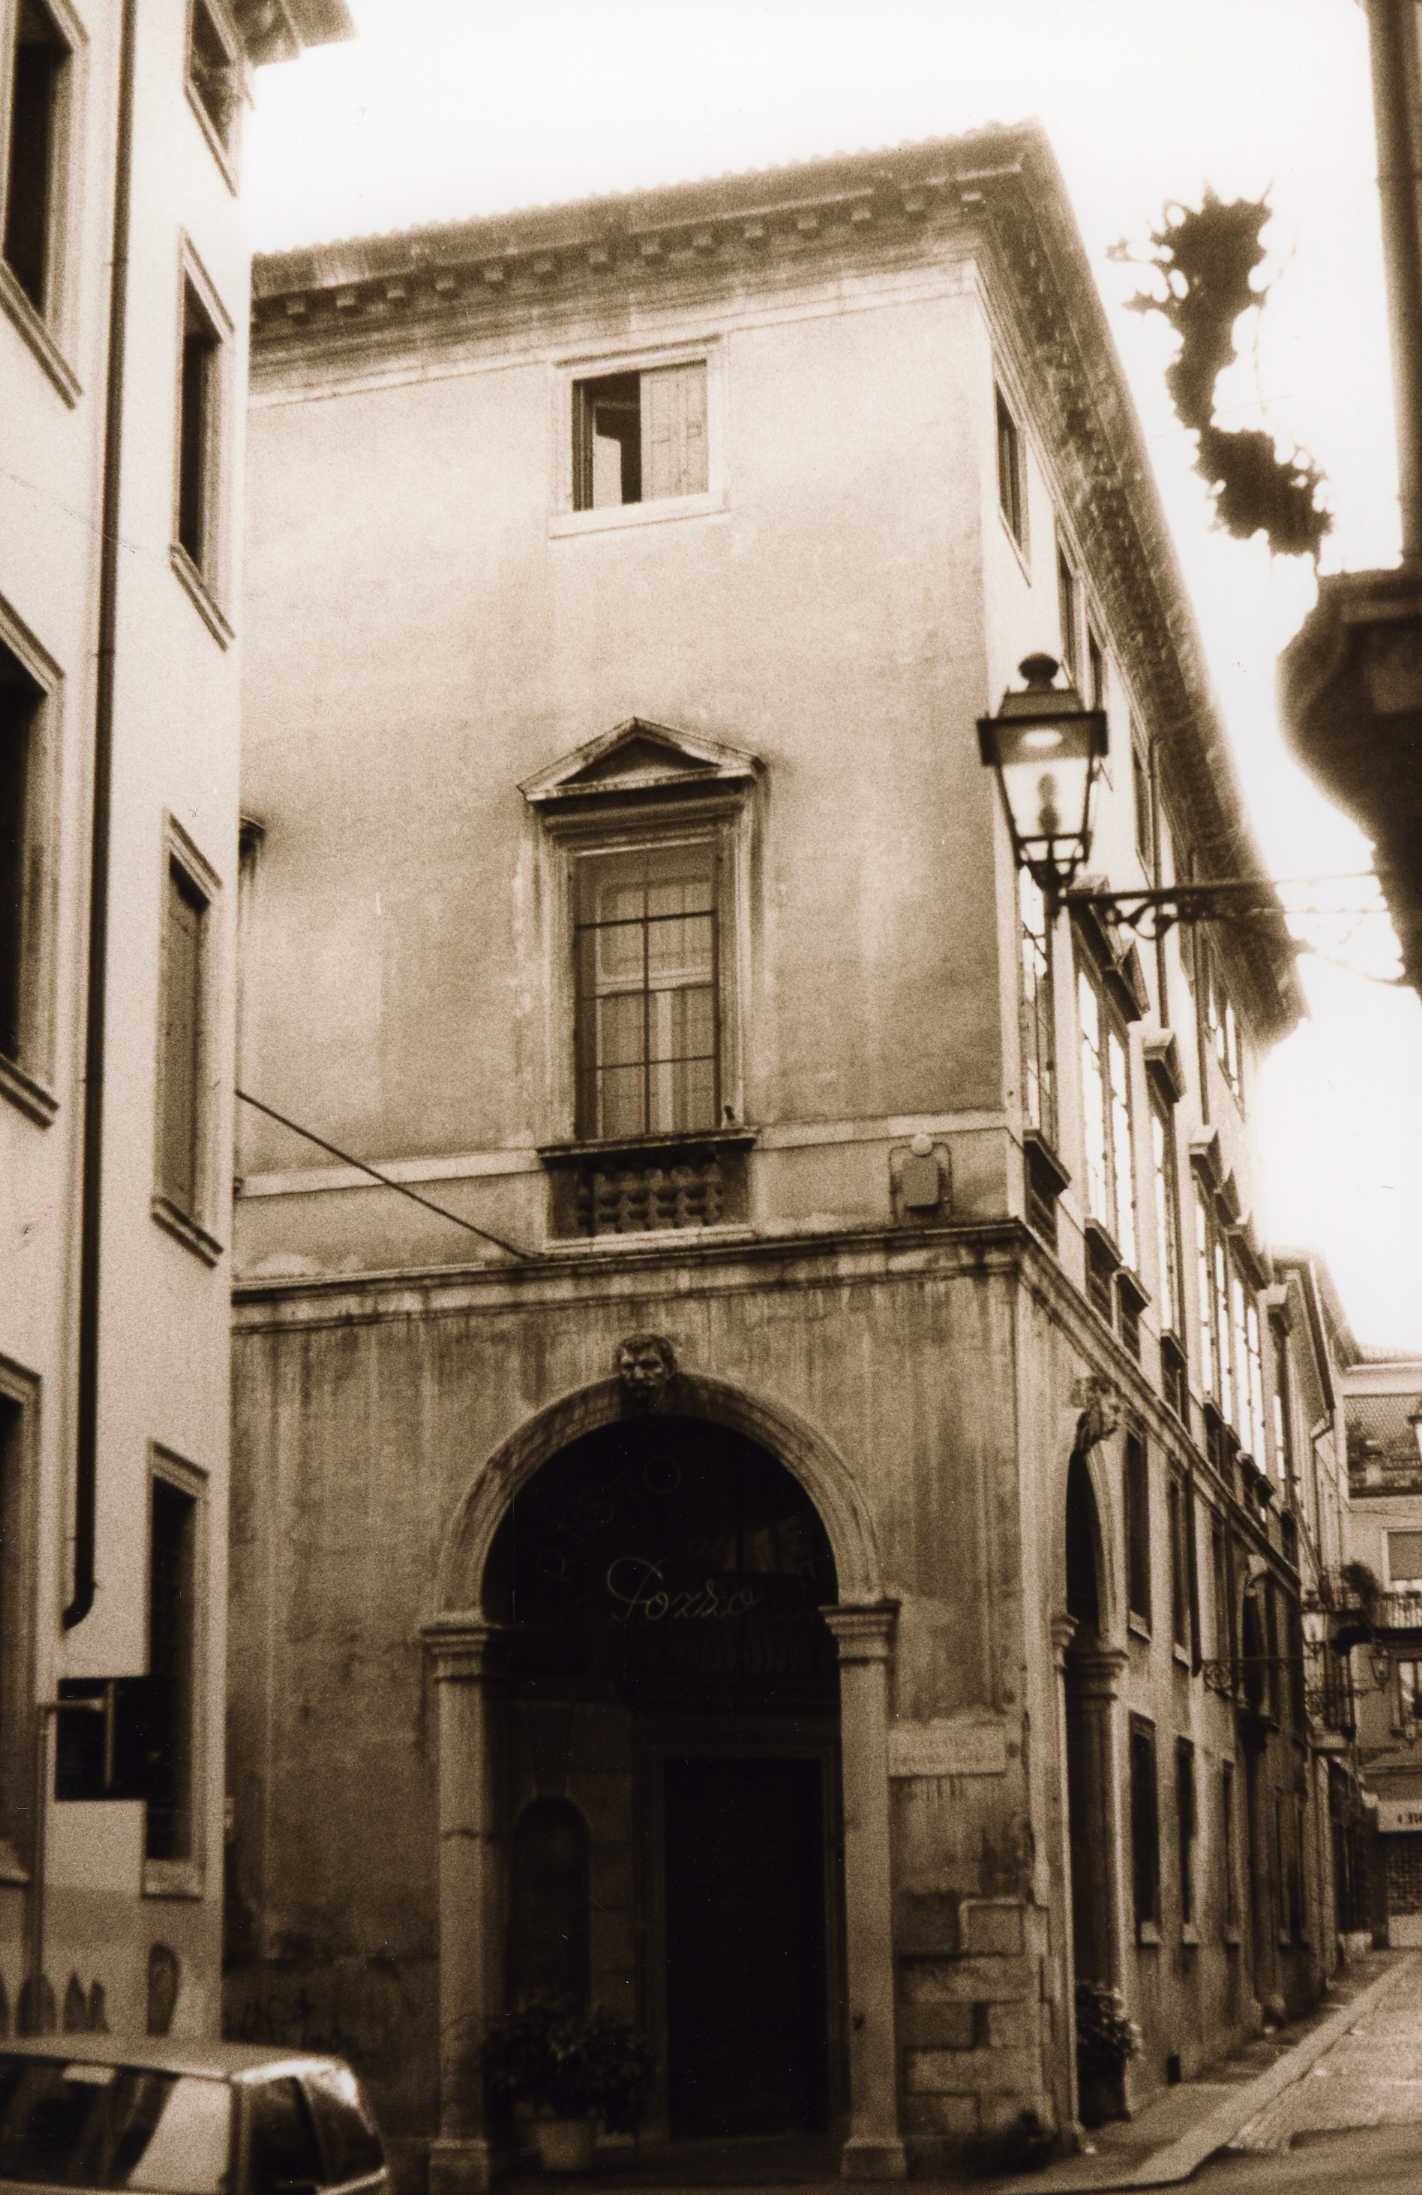 Palazzo Ghellini (palazzo, nobiliare) - Vicenza (VI)  (XVII)